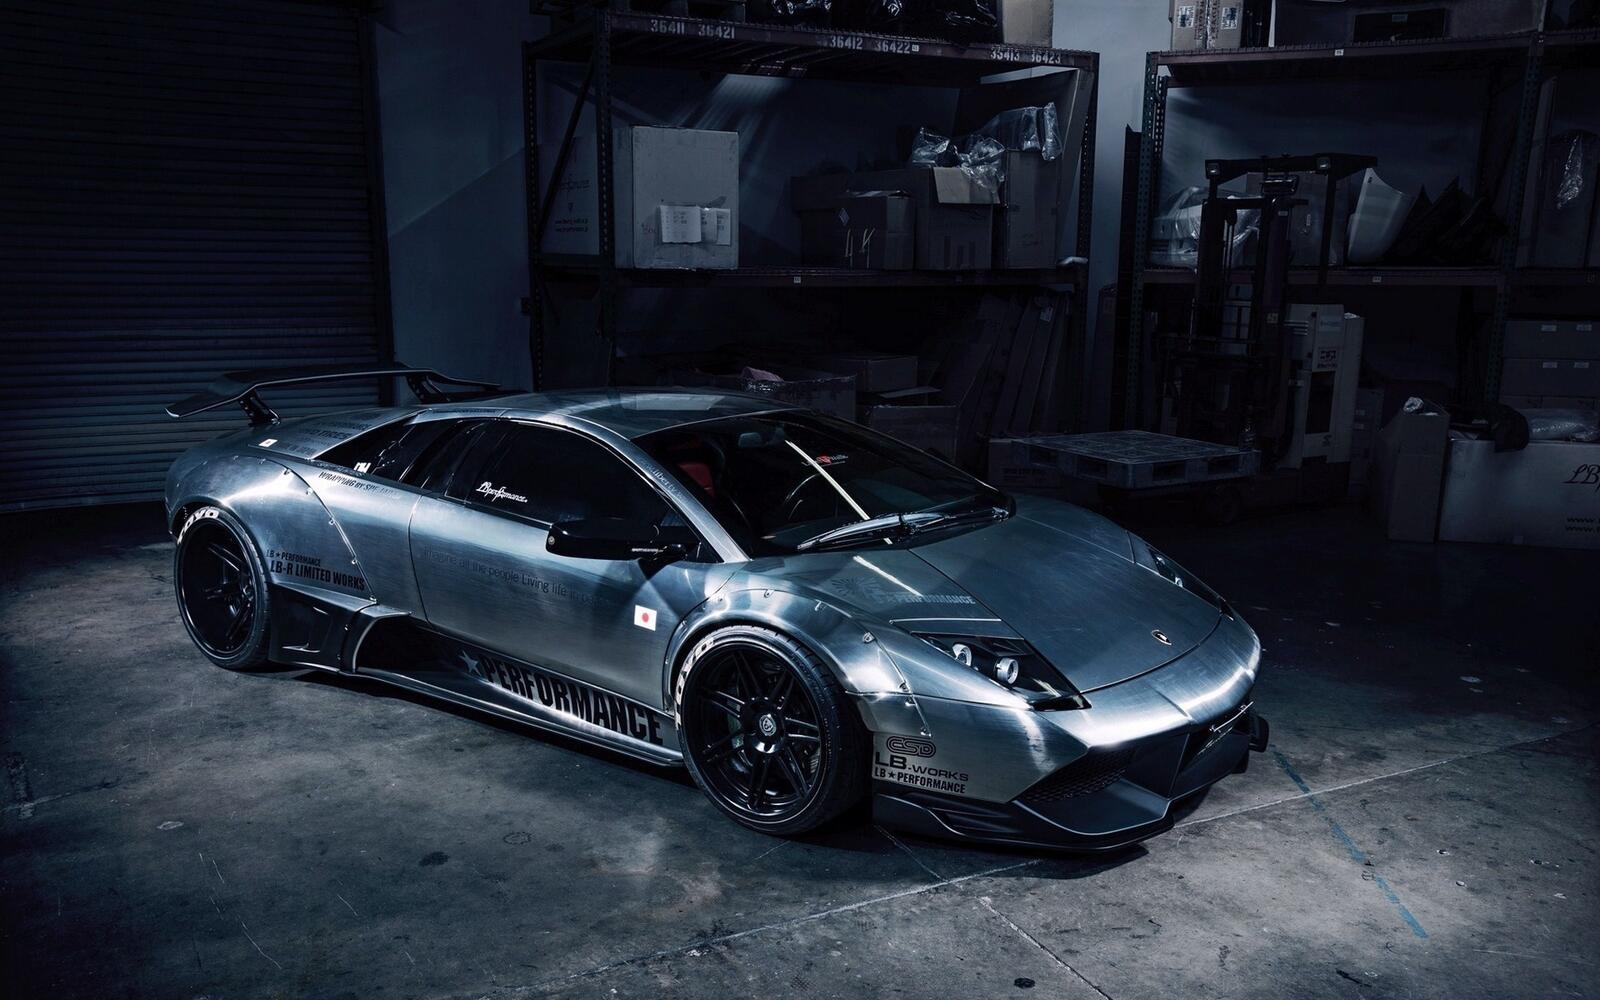 Free photo Lamborghini Reventon in a dark garage.